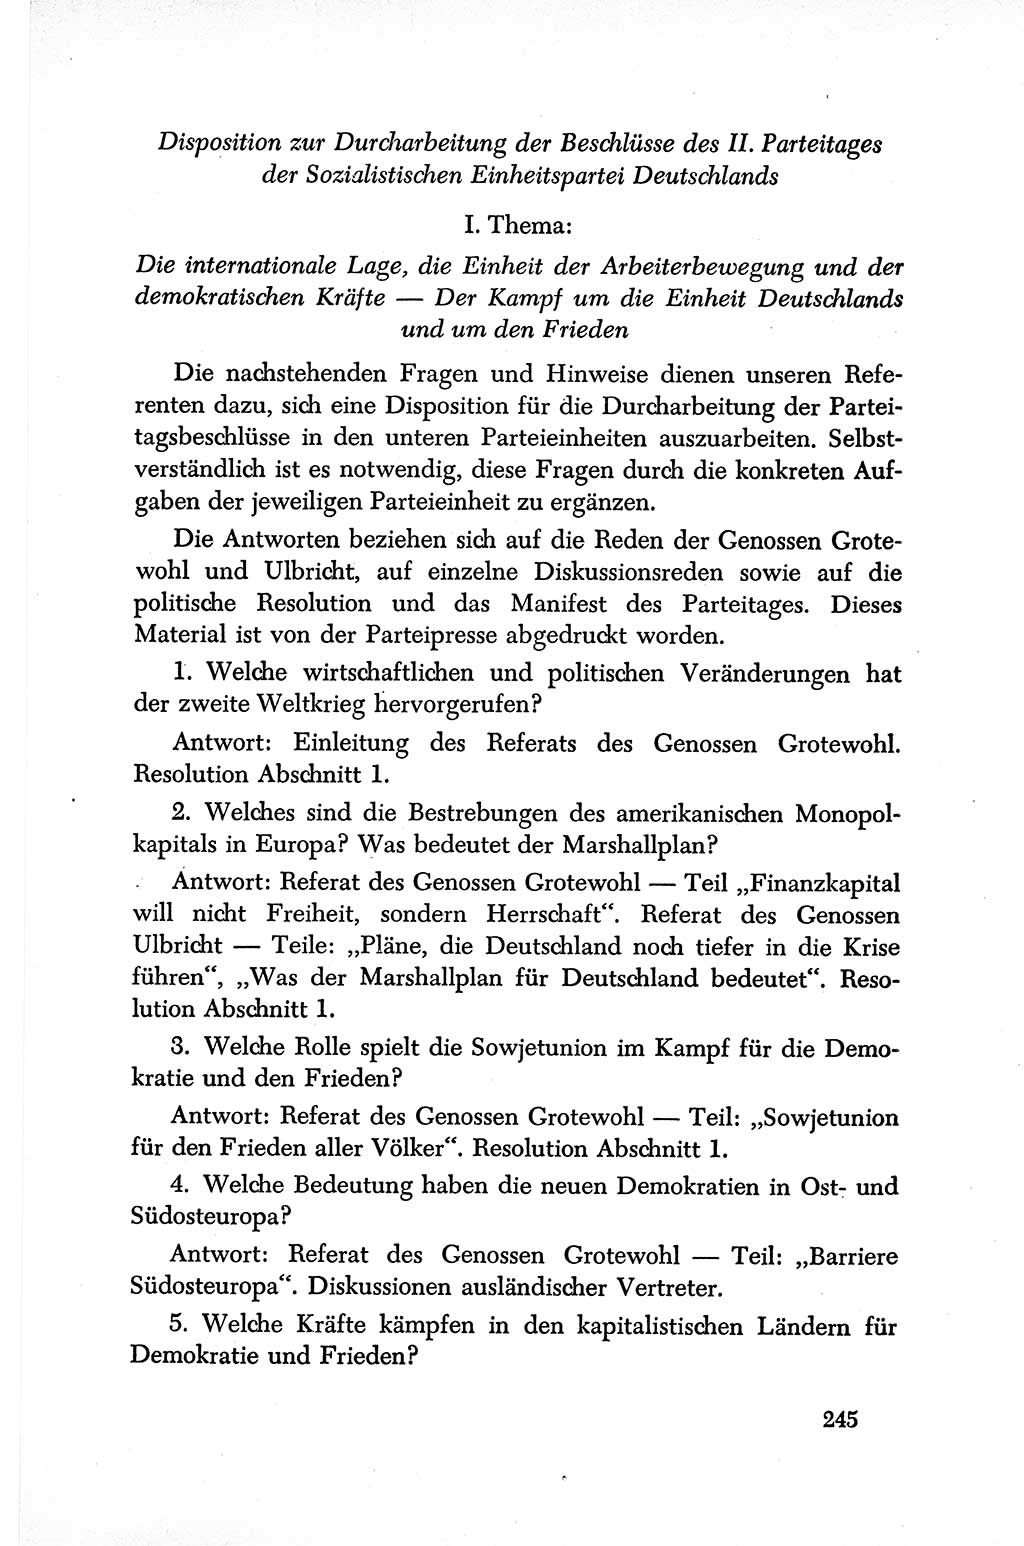 Dokumente der Sozialistischen Einheitspartei Deutschlands (SED) [Sowjetische Besatzungszone (SBZ) Deutschlands] 1946-1948, Seite 245 (Dok. SED SBZ Dtl. 1946-1948, S. 245)